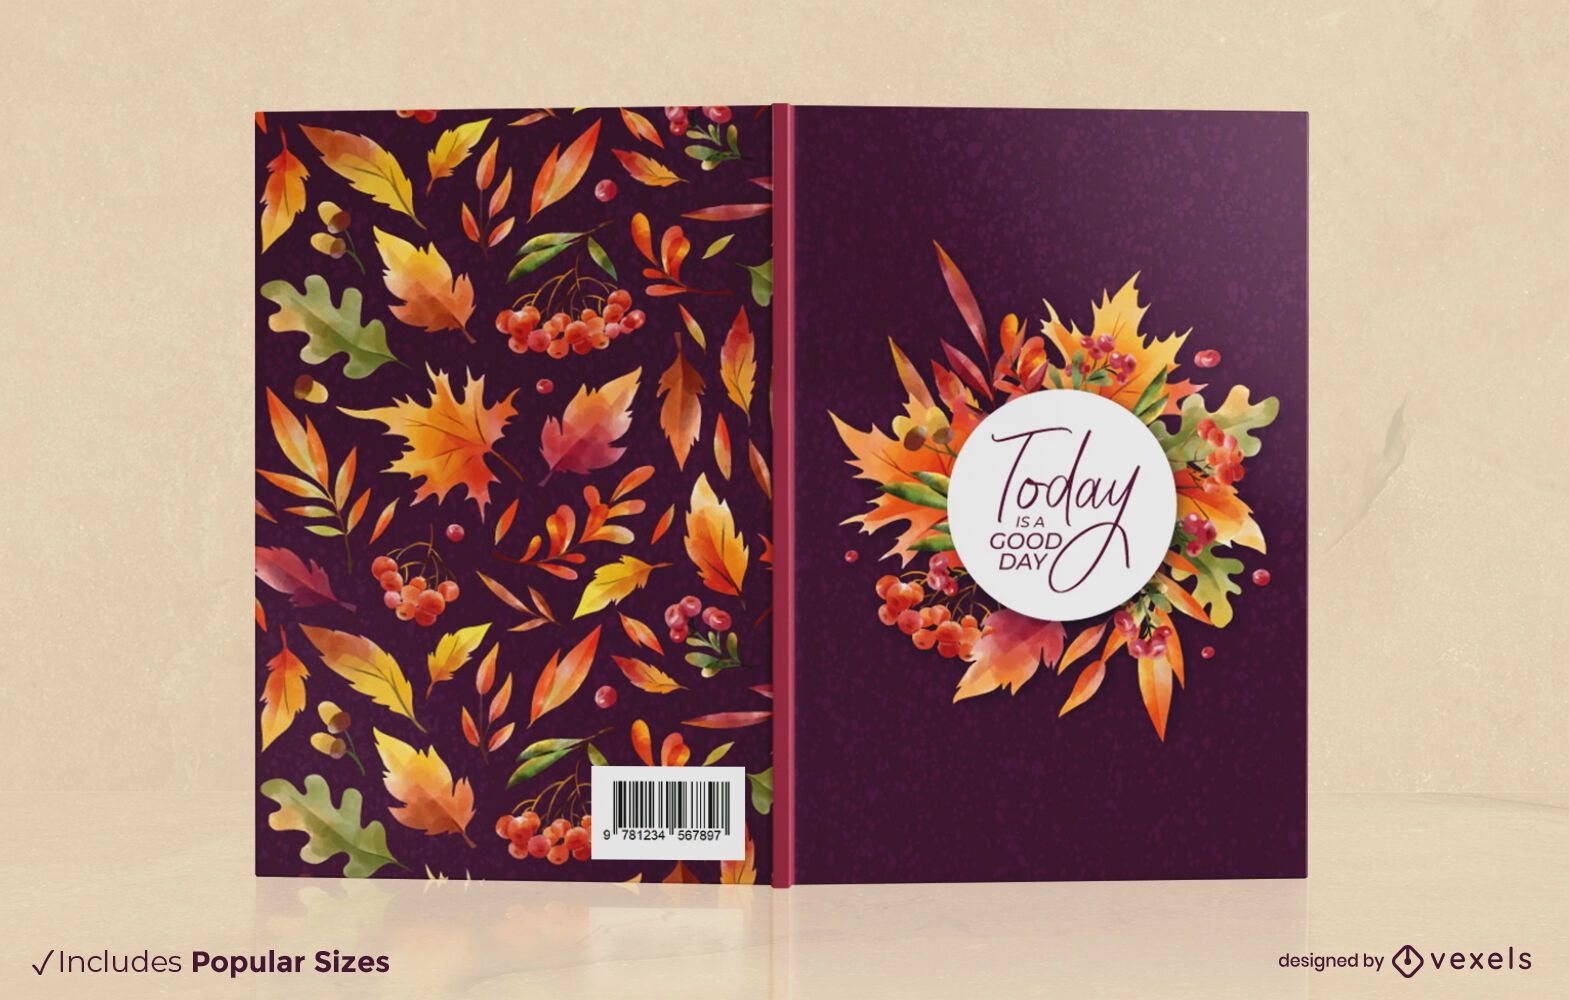 La temporada de otoño deja el diseño de la portada del libro.